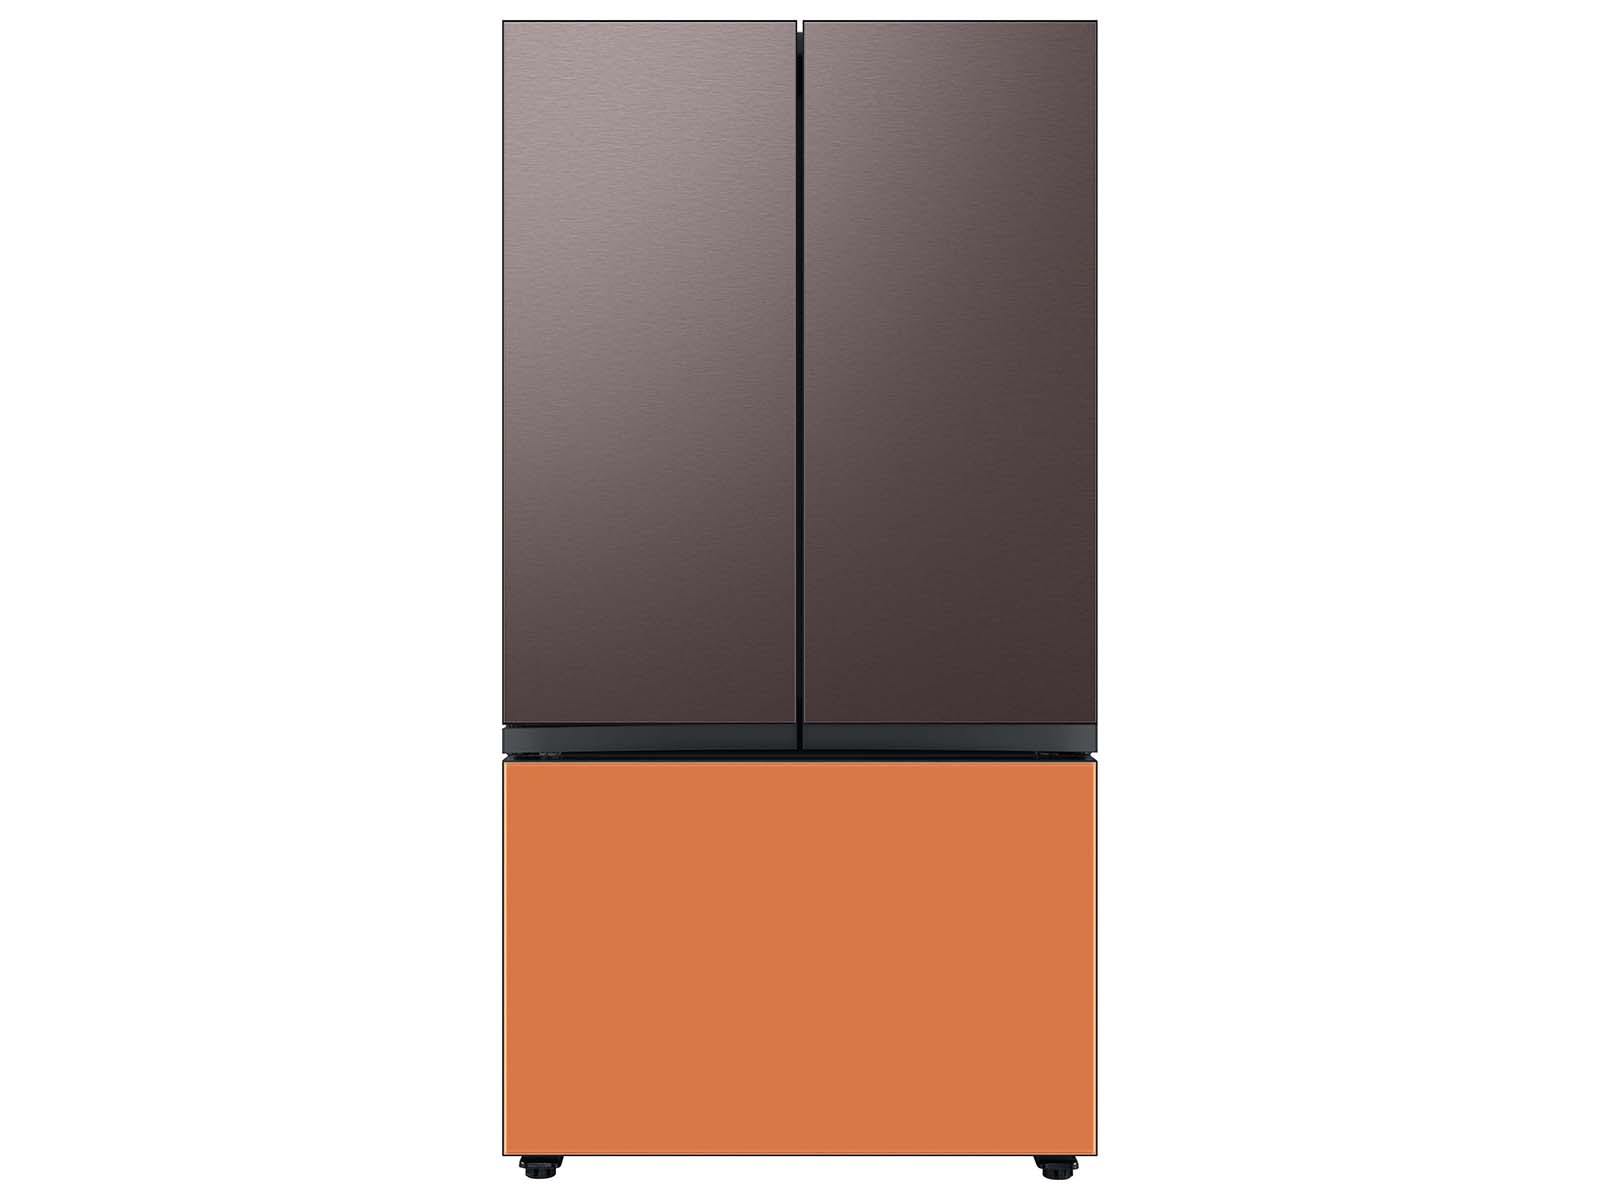 Thumbnail image of Bespoke 3-Door French Door Refrigerator Panel in Tuscan Steel - Top Panel